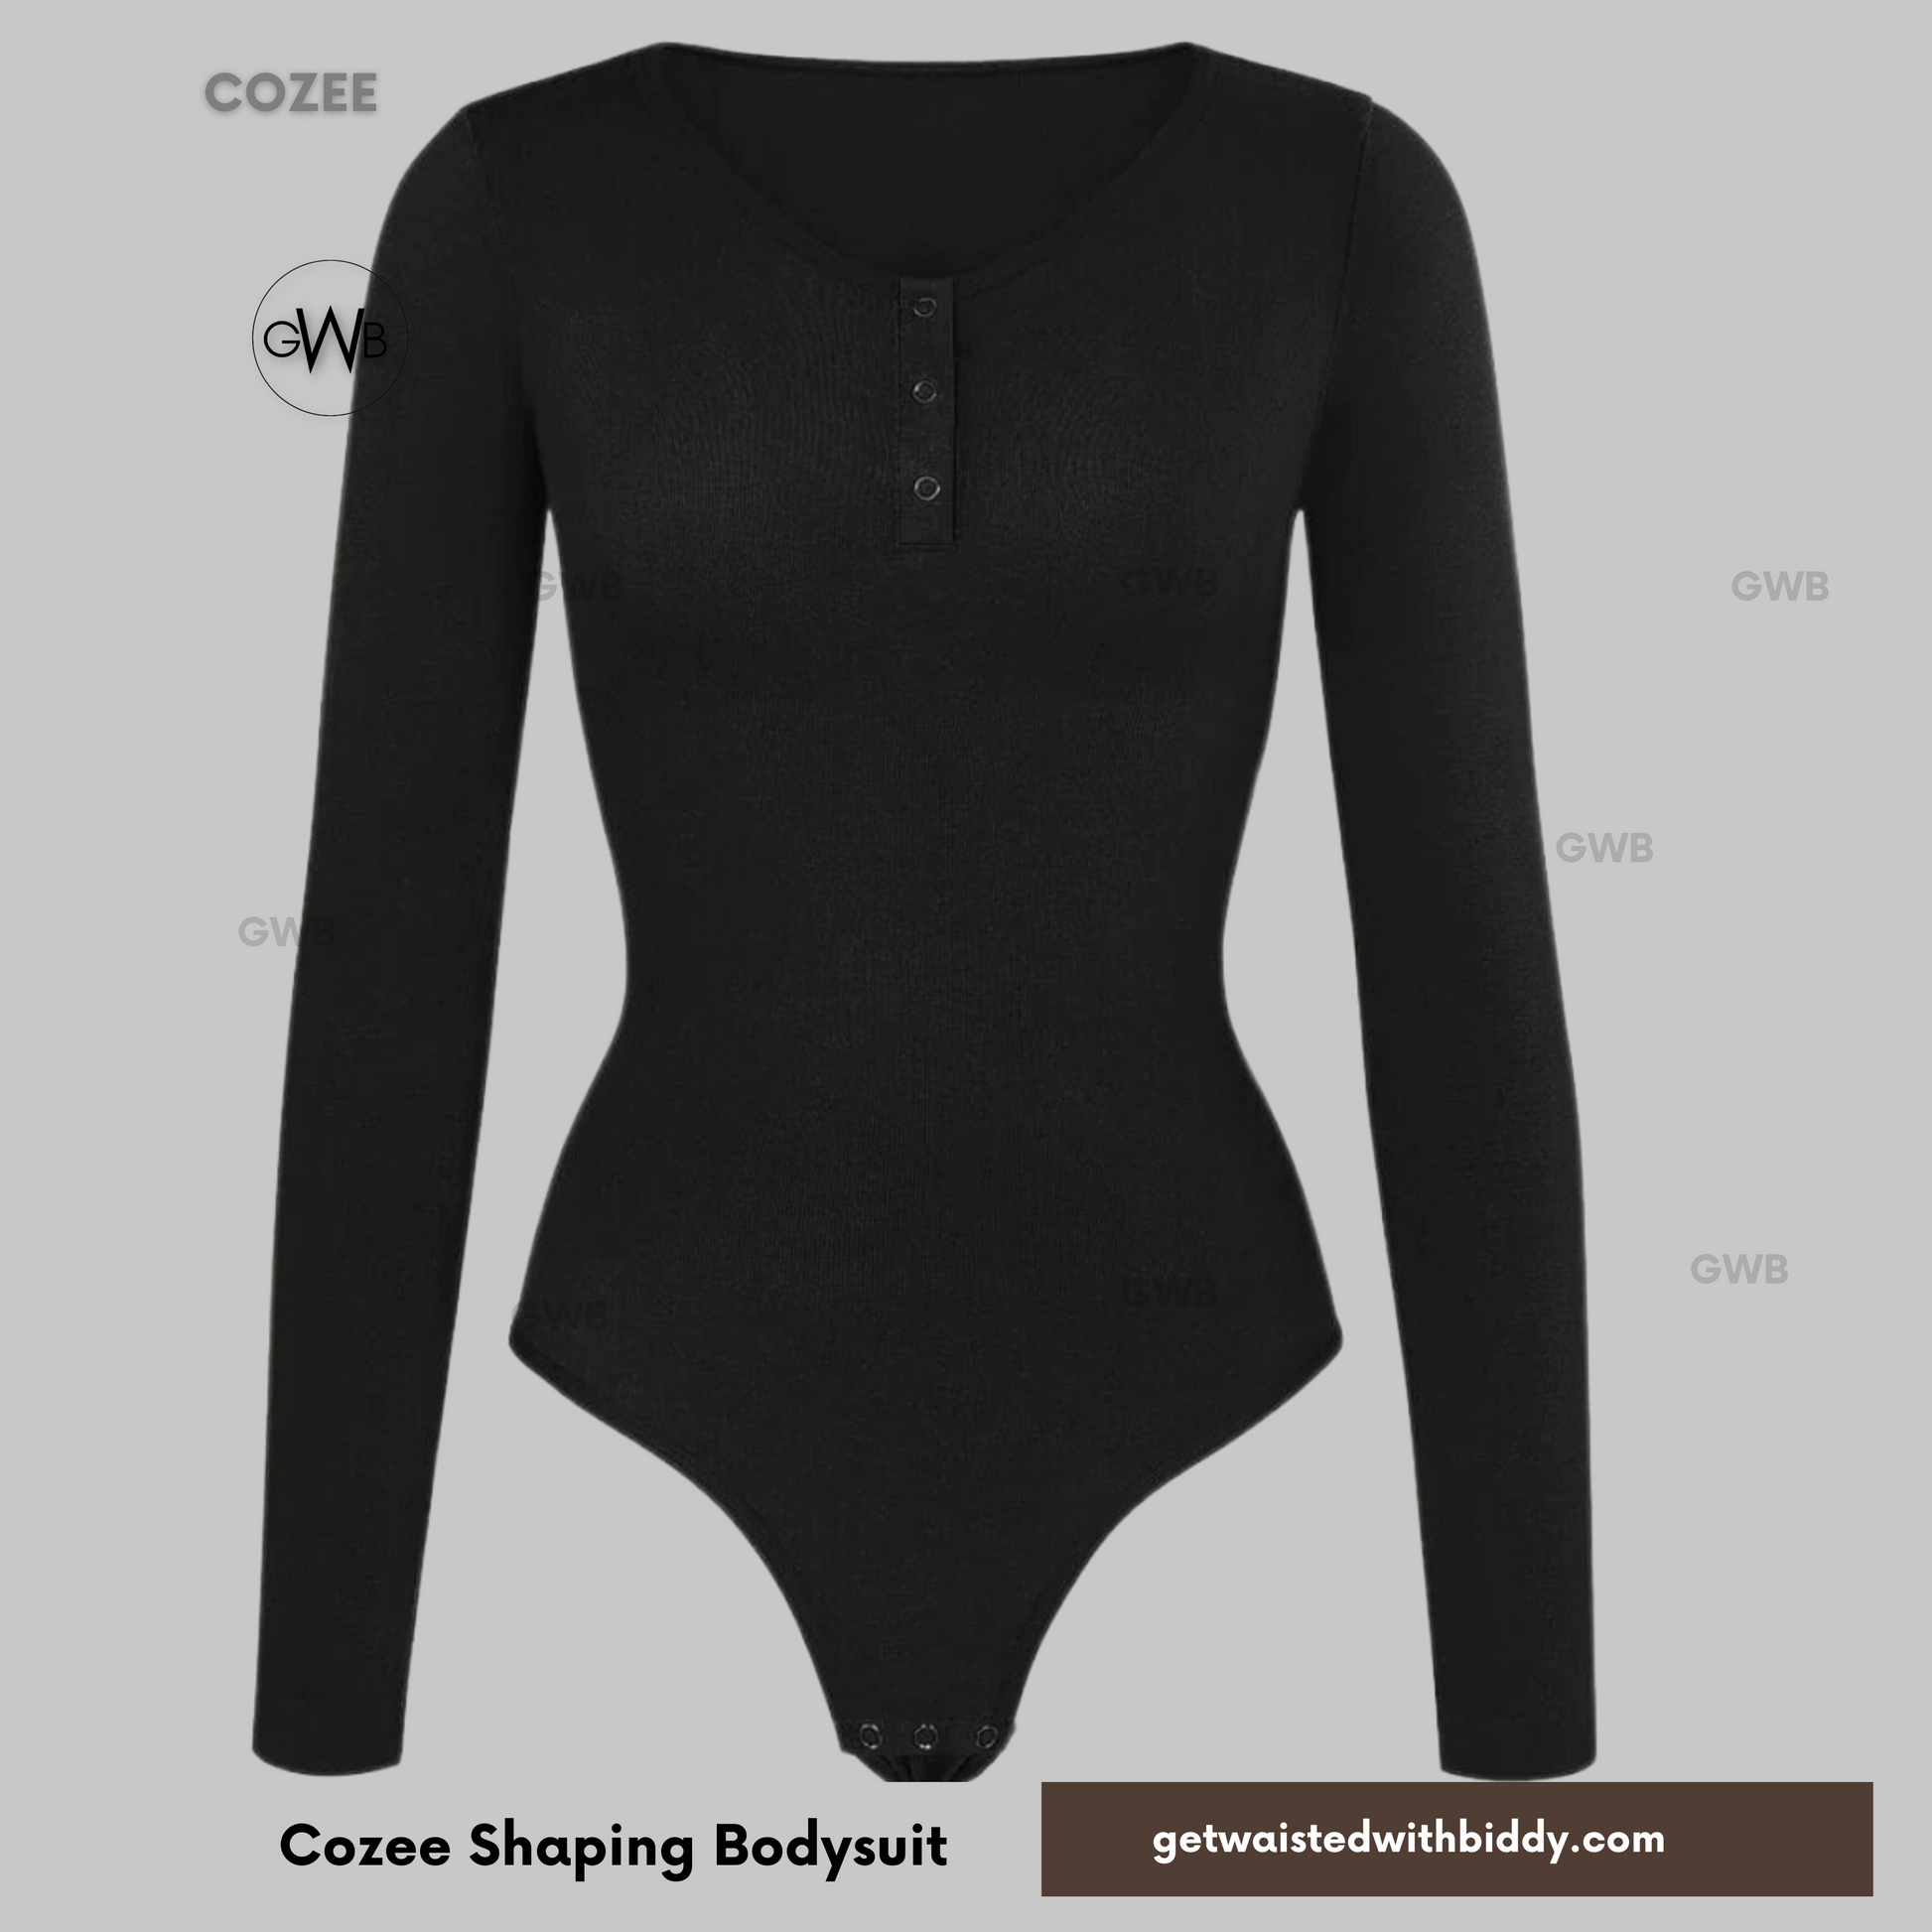 Cozee Shapewear Bodysuit -Tummy Control Bodysuit - Best shapewear